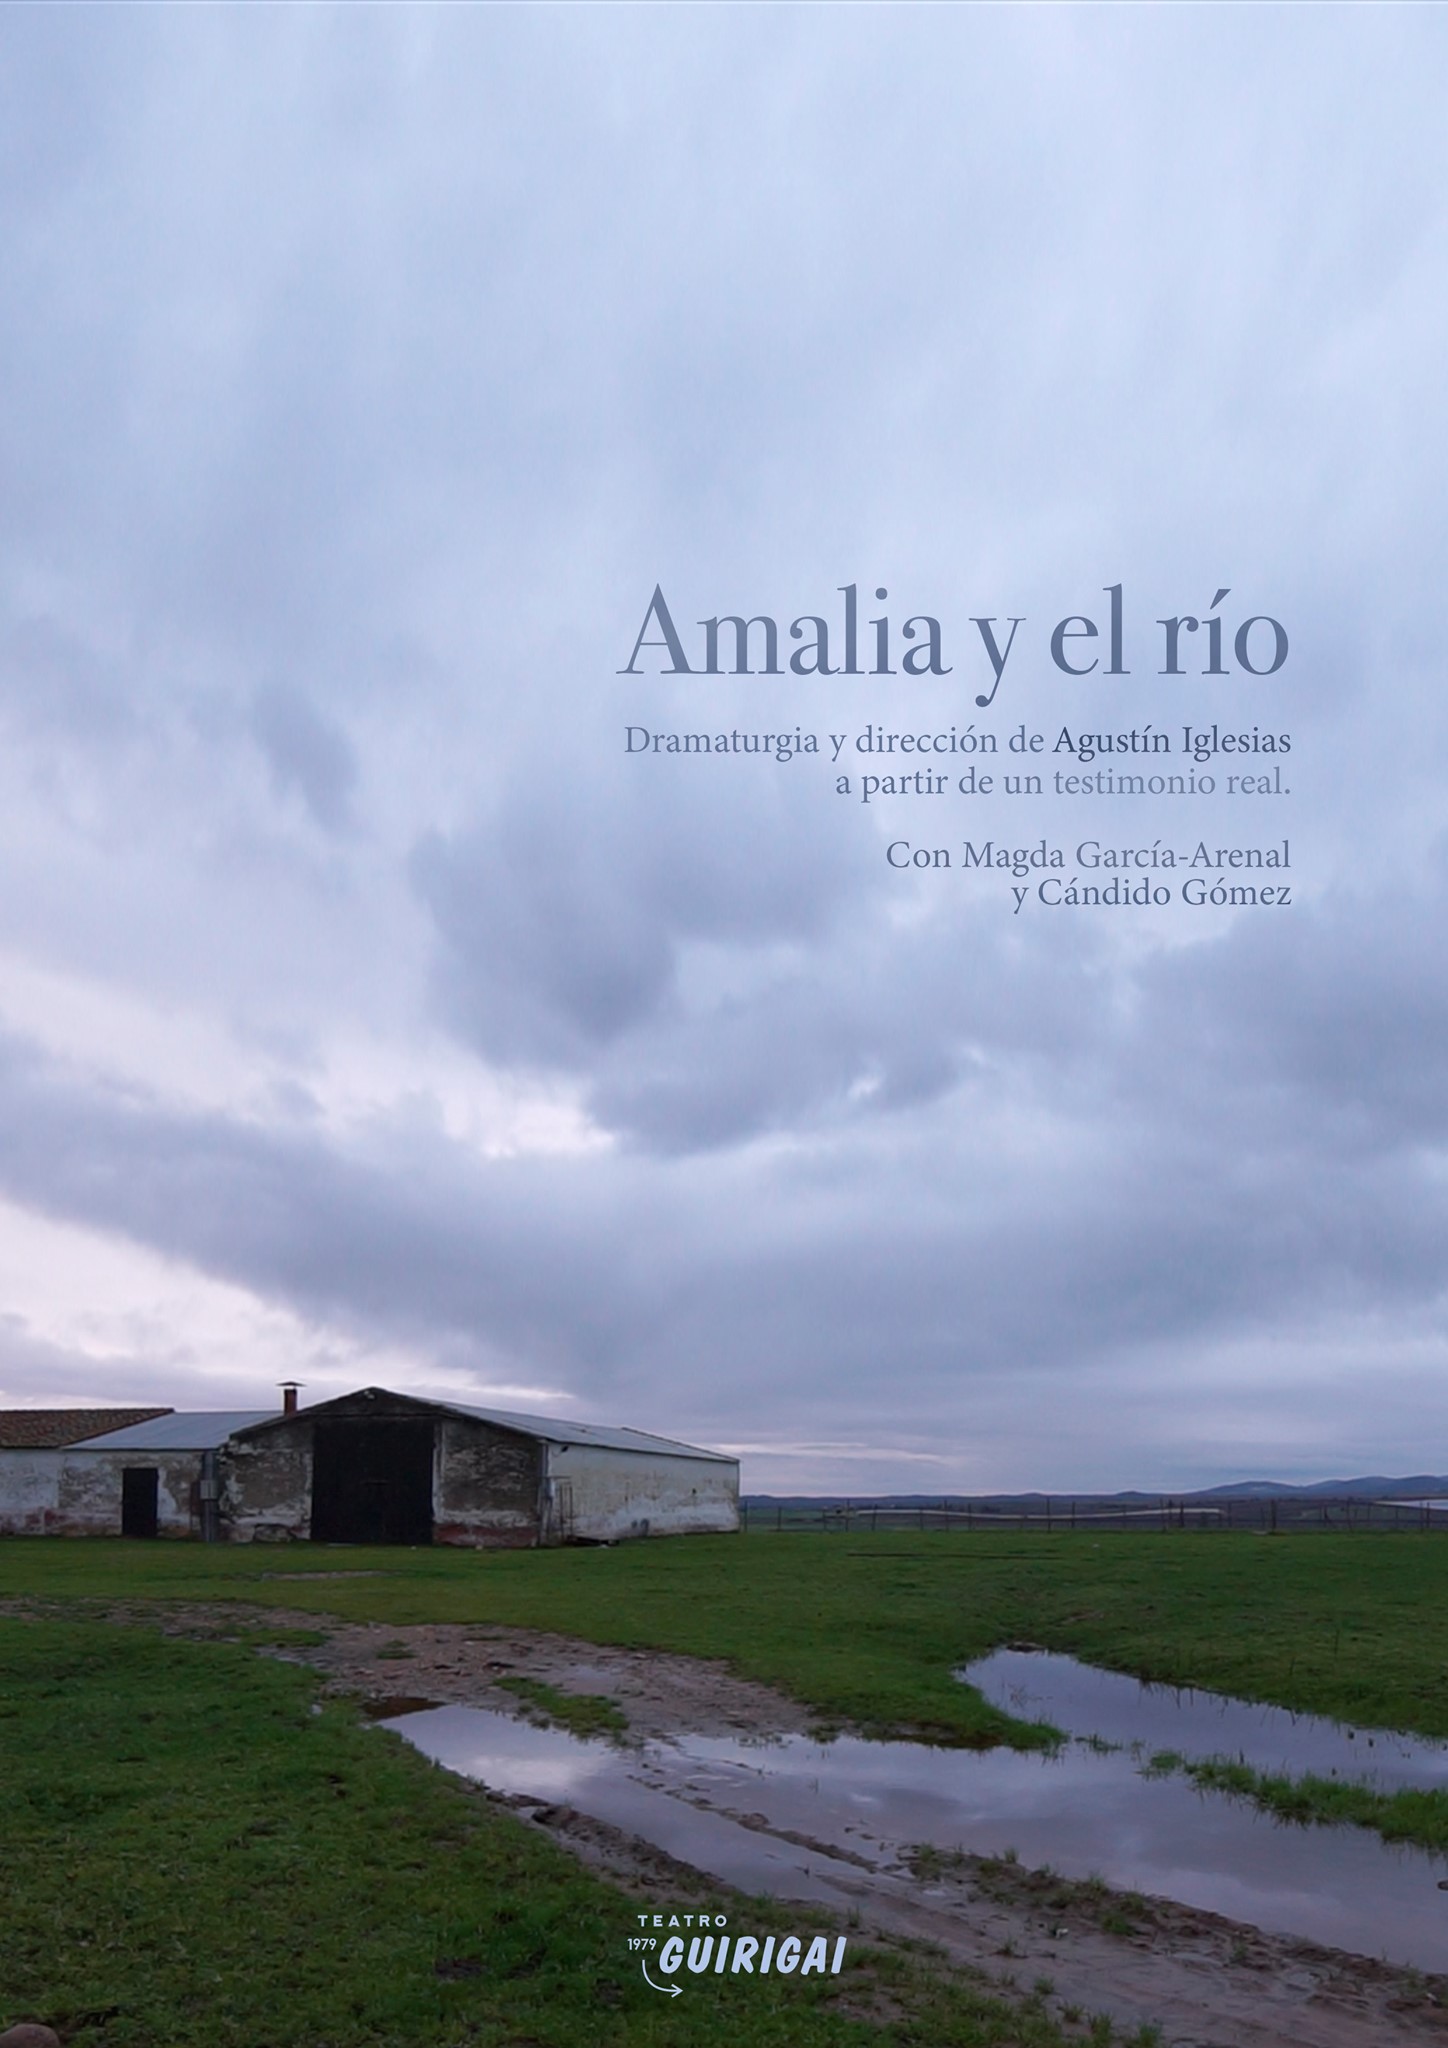 'Amalia y el Río' Teatro do Guirigai – Santos de Maimona/Espanha